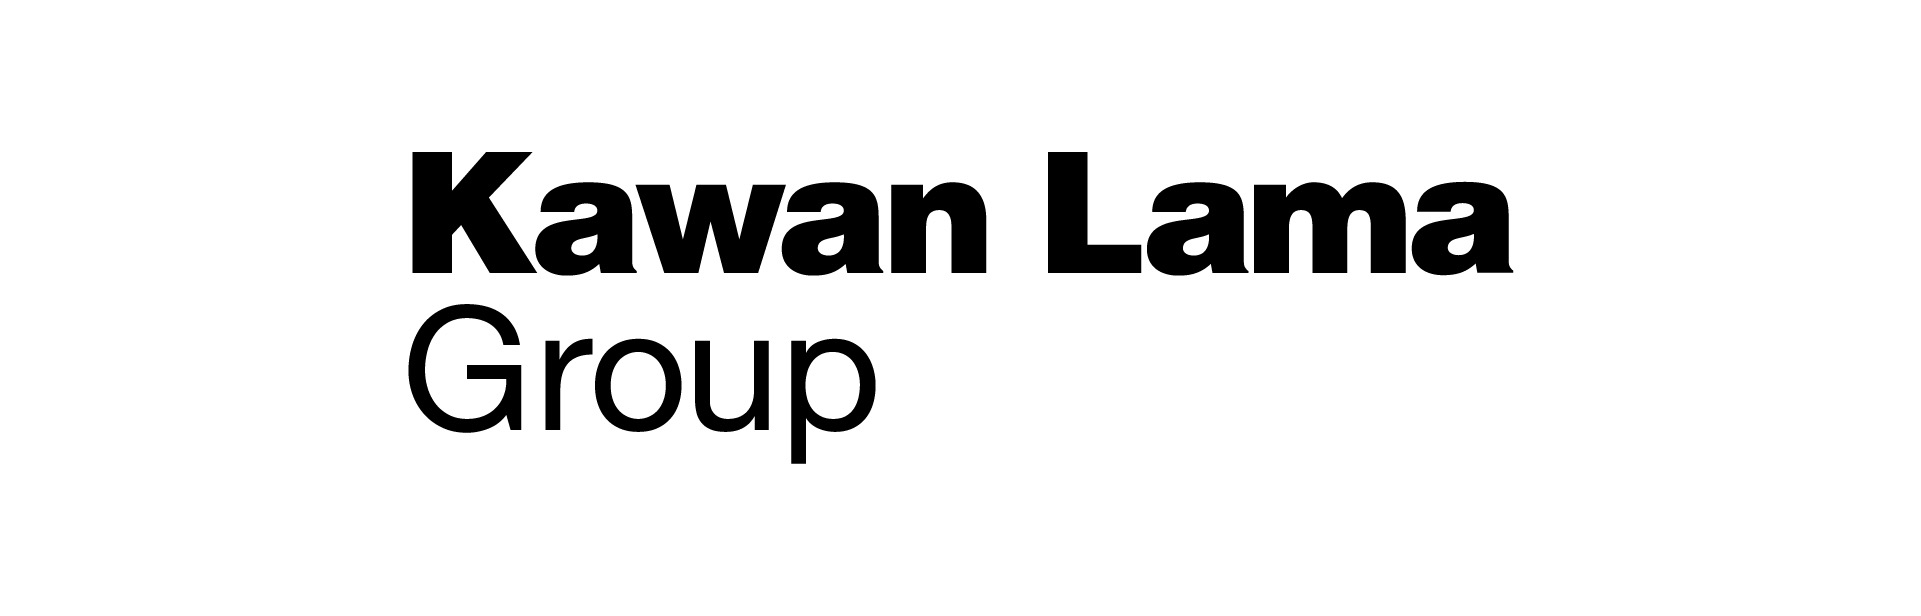 Kawan Lama Group